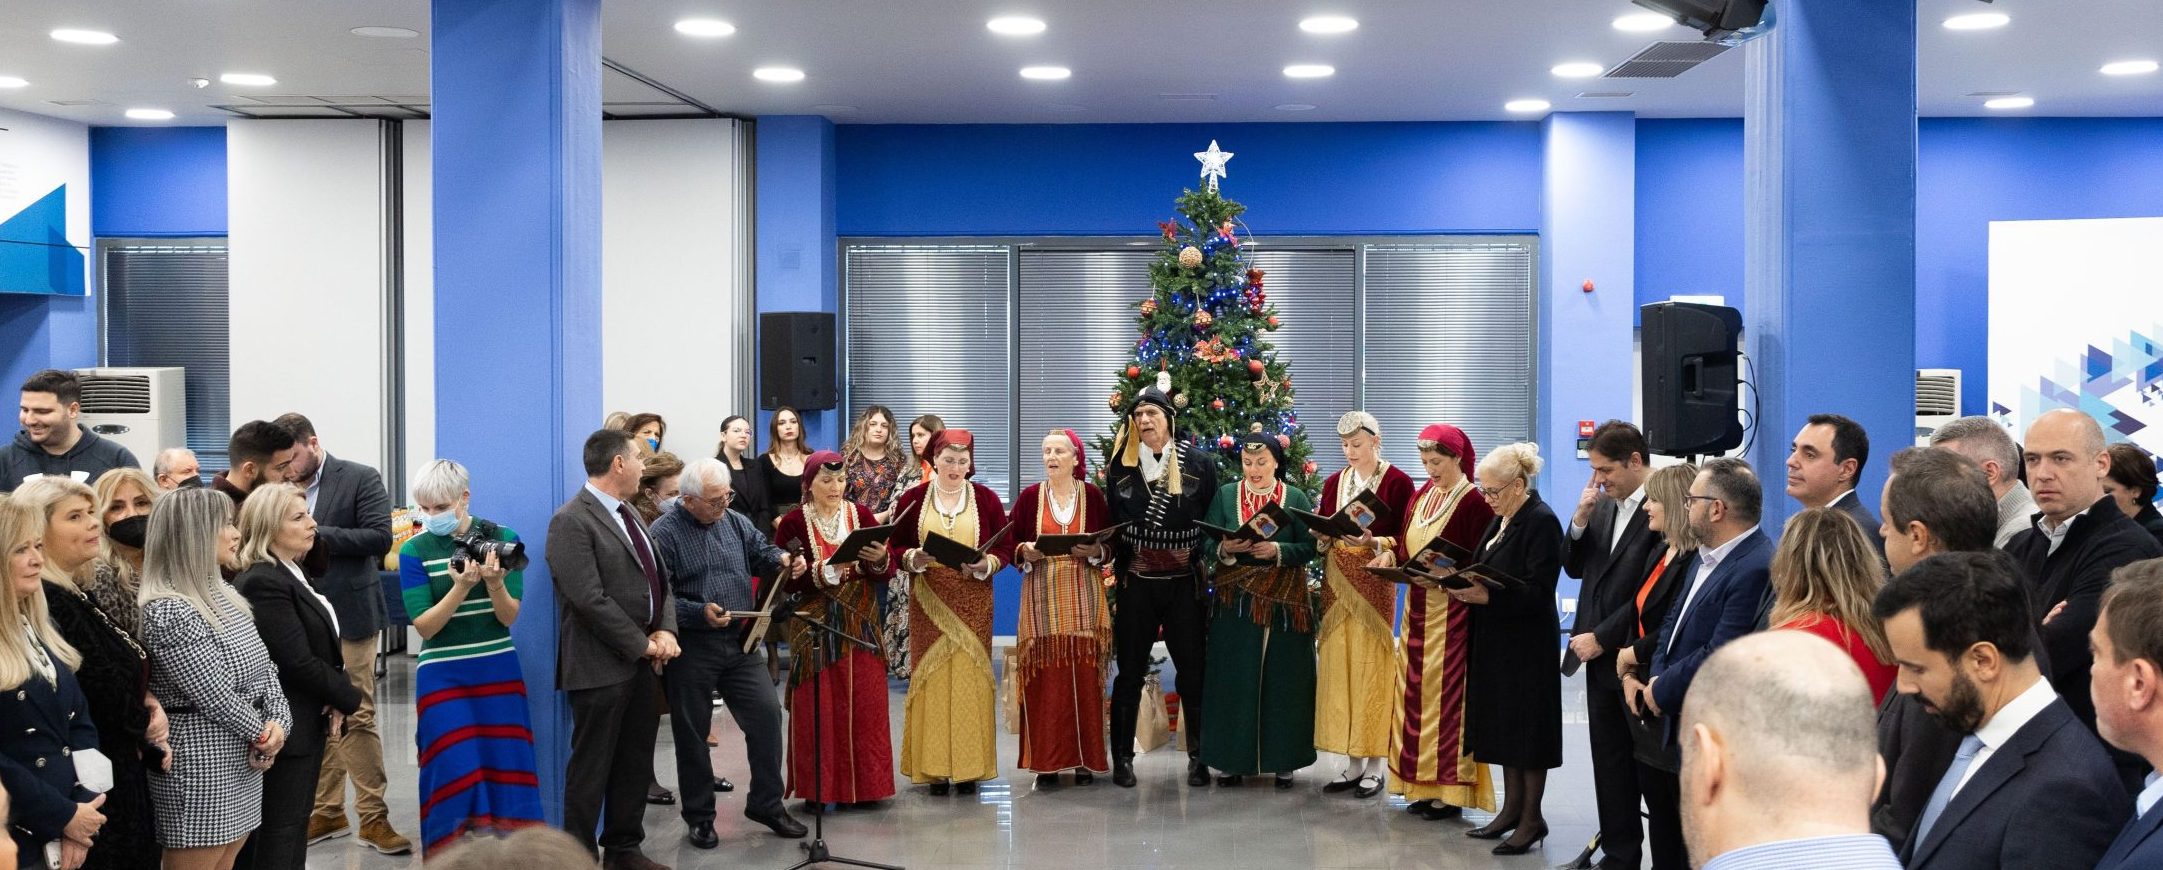 Χριστουγεννιάτικη εκδήλωση στα γραφεία της ΝΔ (εικόνες)